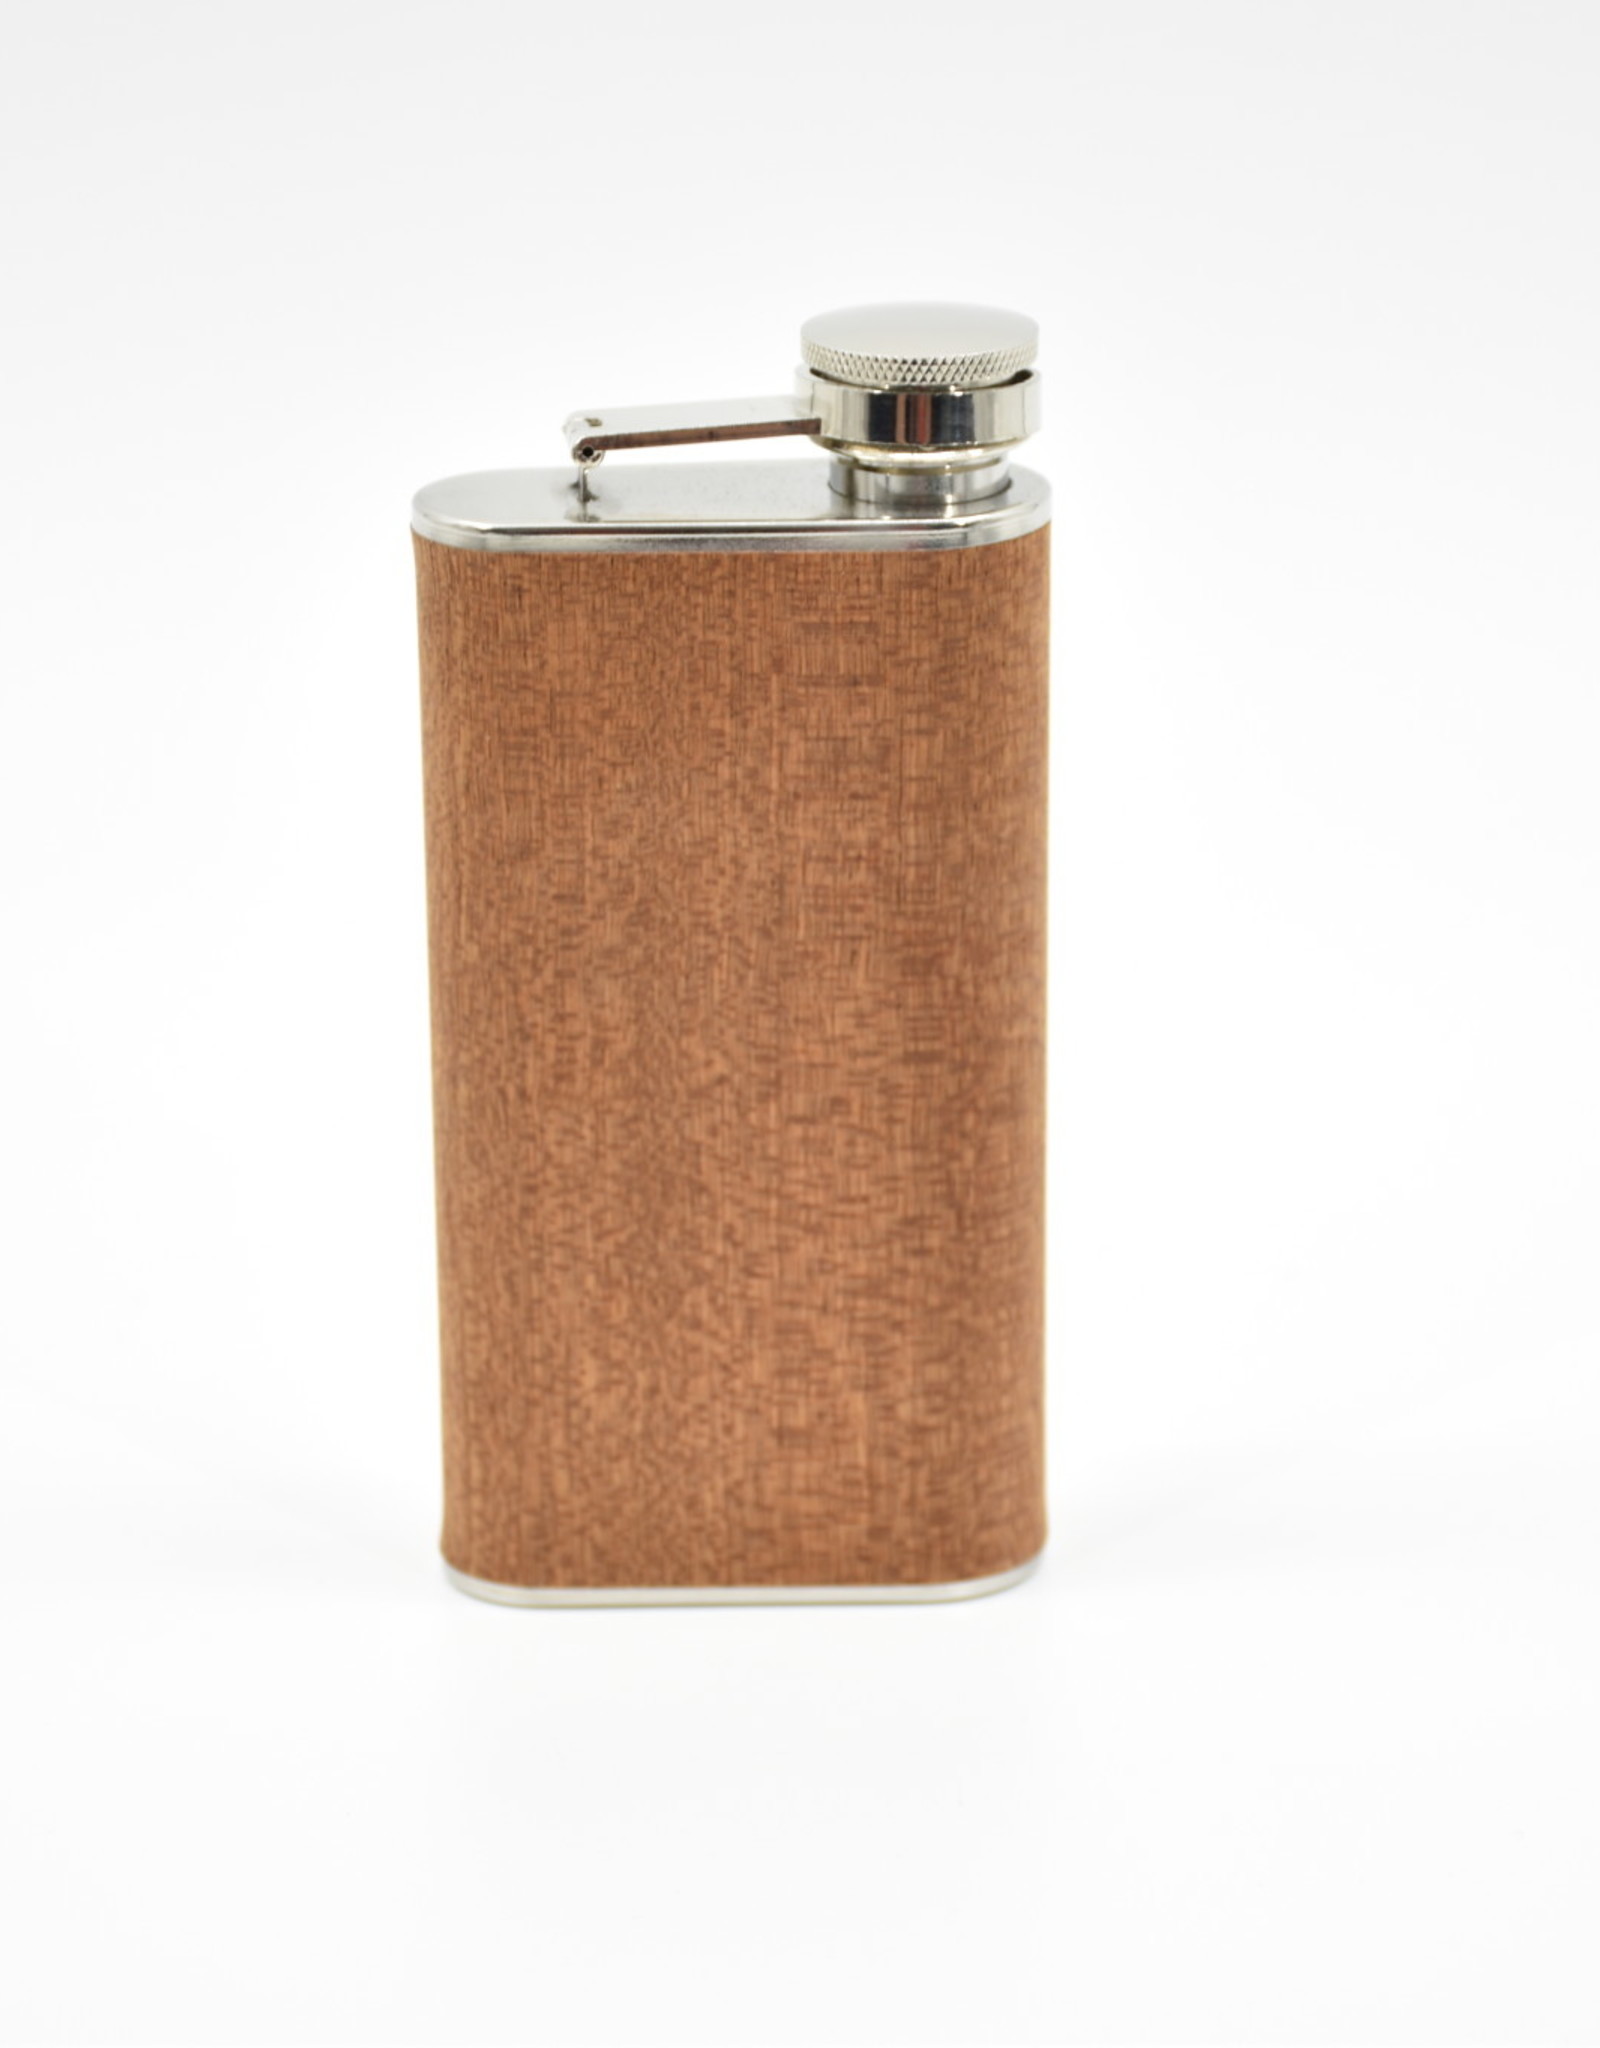 Stainless Steel and Wood Veneer Flask